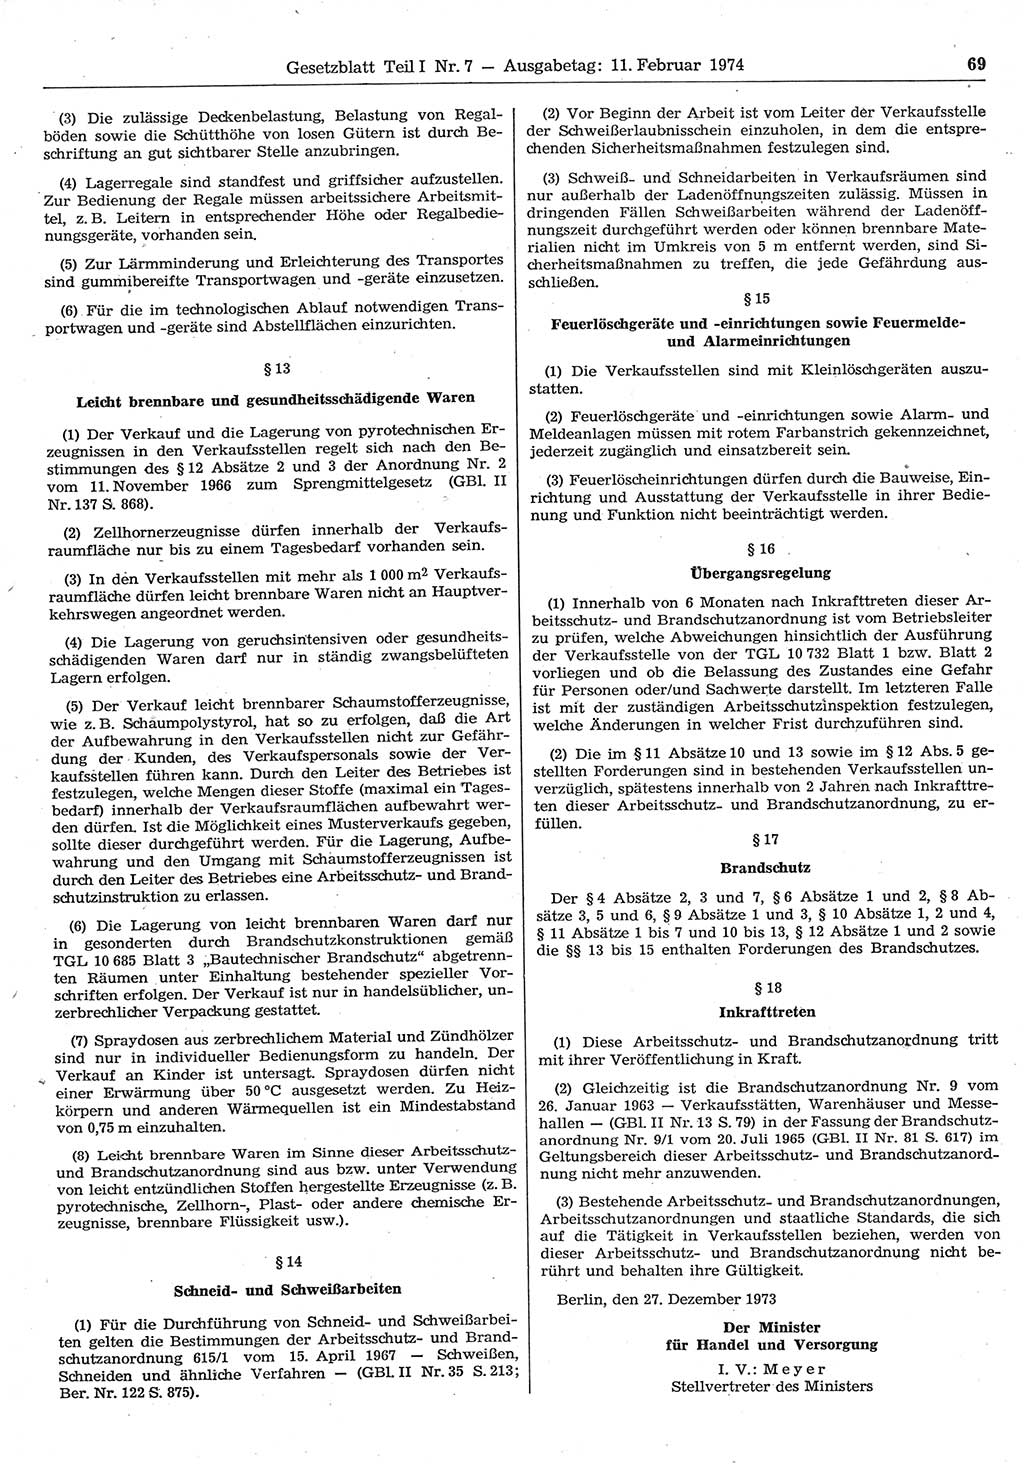 Gesetzblatt (GBl.) der Deutschen Demokratischen Republik (DDR) Teil Ⅰ 1974, Seite 69 (GBl. DDR Ⅰ 1974, S. 69)